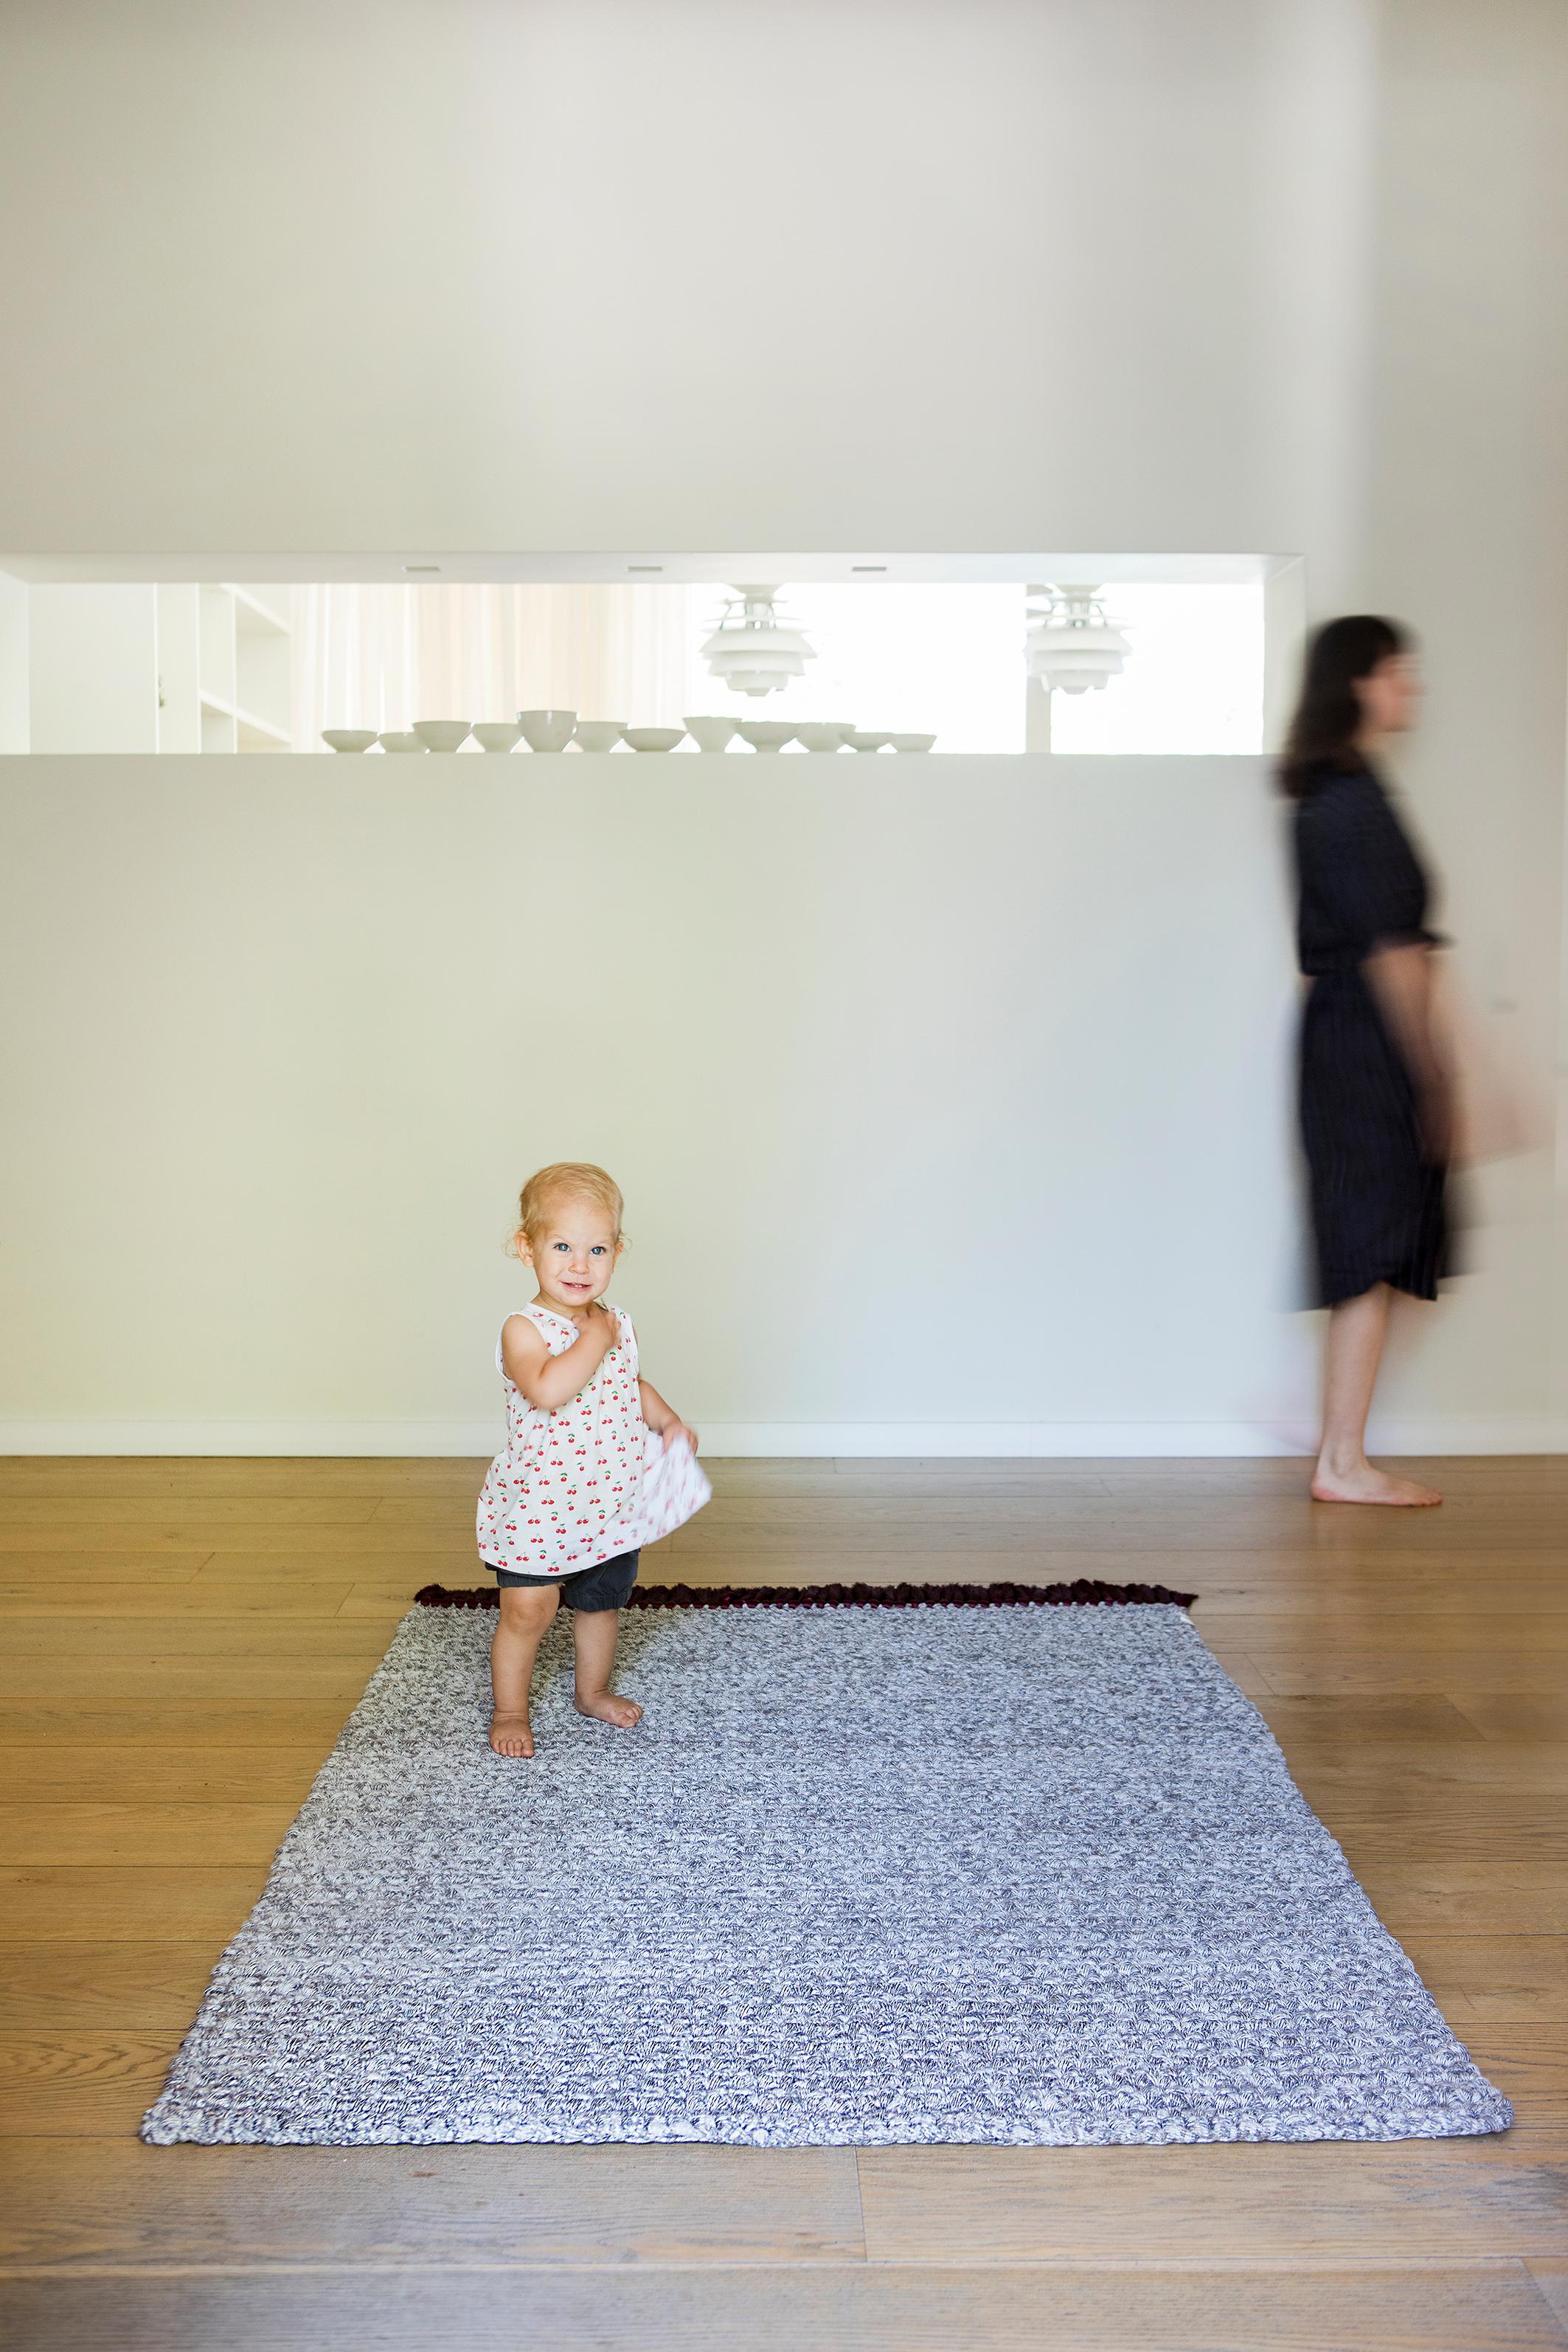 IOTA-Teppiche sind dick, weich, handgestrickt und luxuriös, dreimal dicker als ein Standardteppich. Die dicken, mittelgroßen Teppiche erzeugen einen subtilen Farbverlauf, der jeden Raum erhellt. Sie eignen sich sowohl für eine intime Ecke im